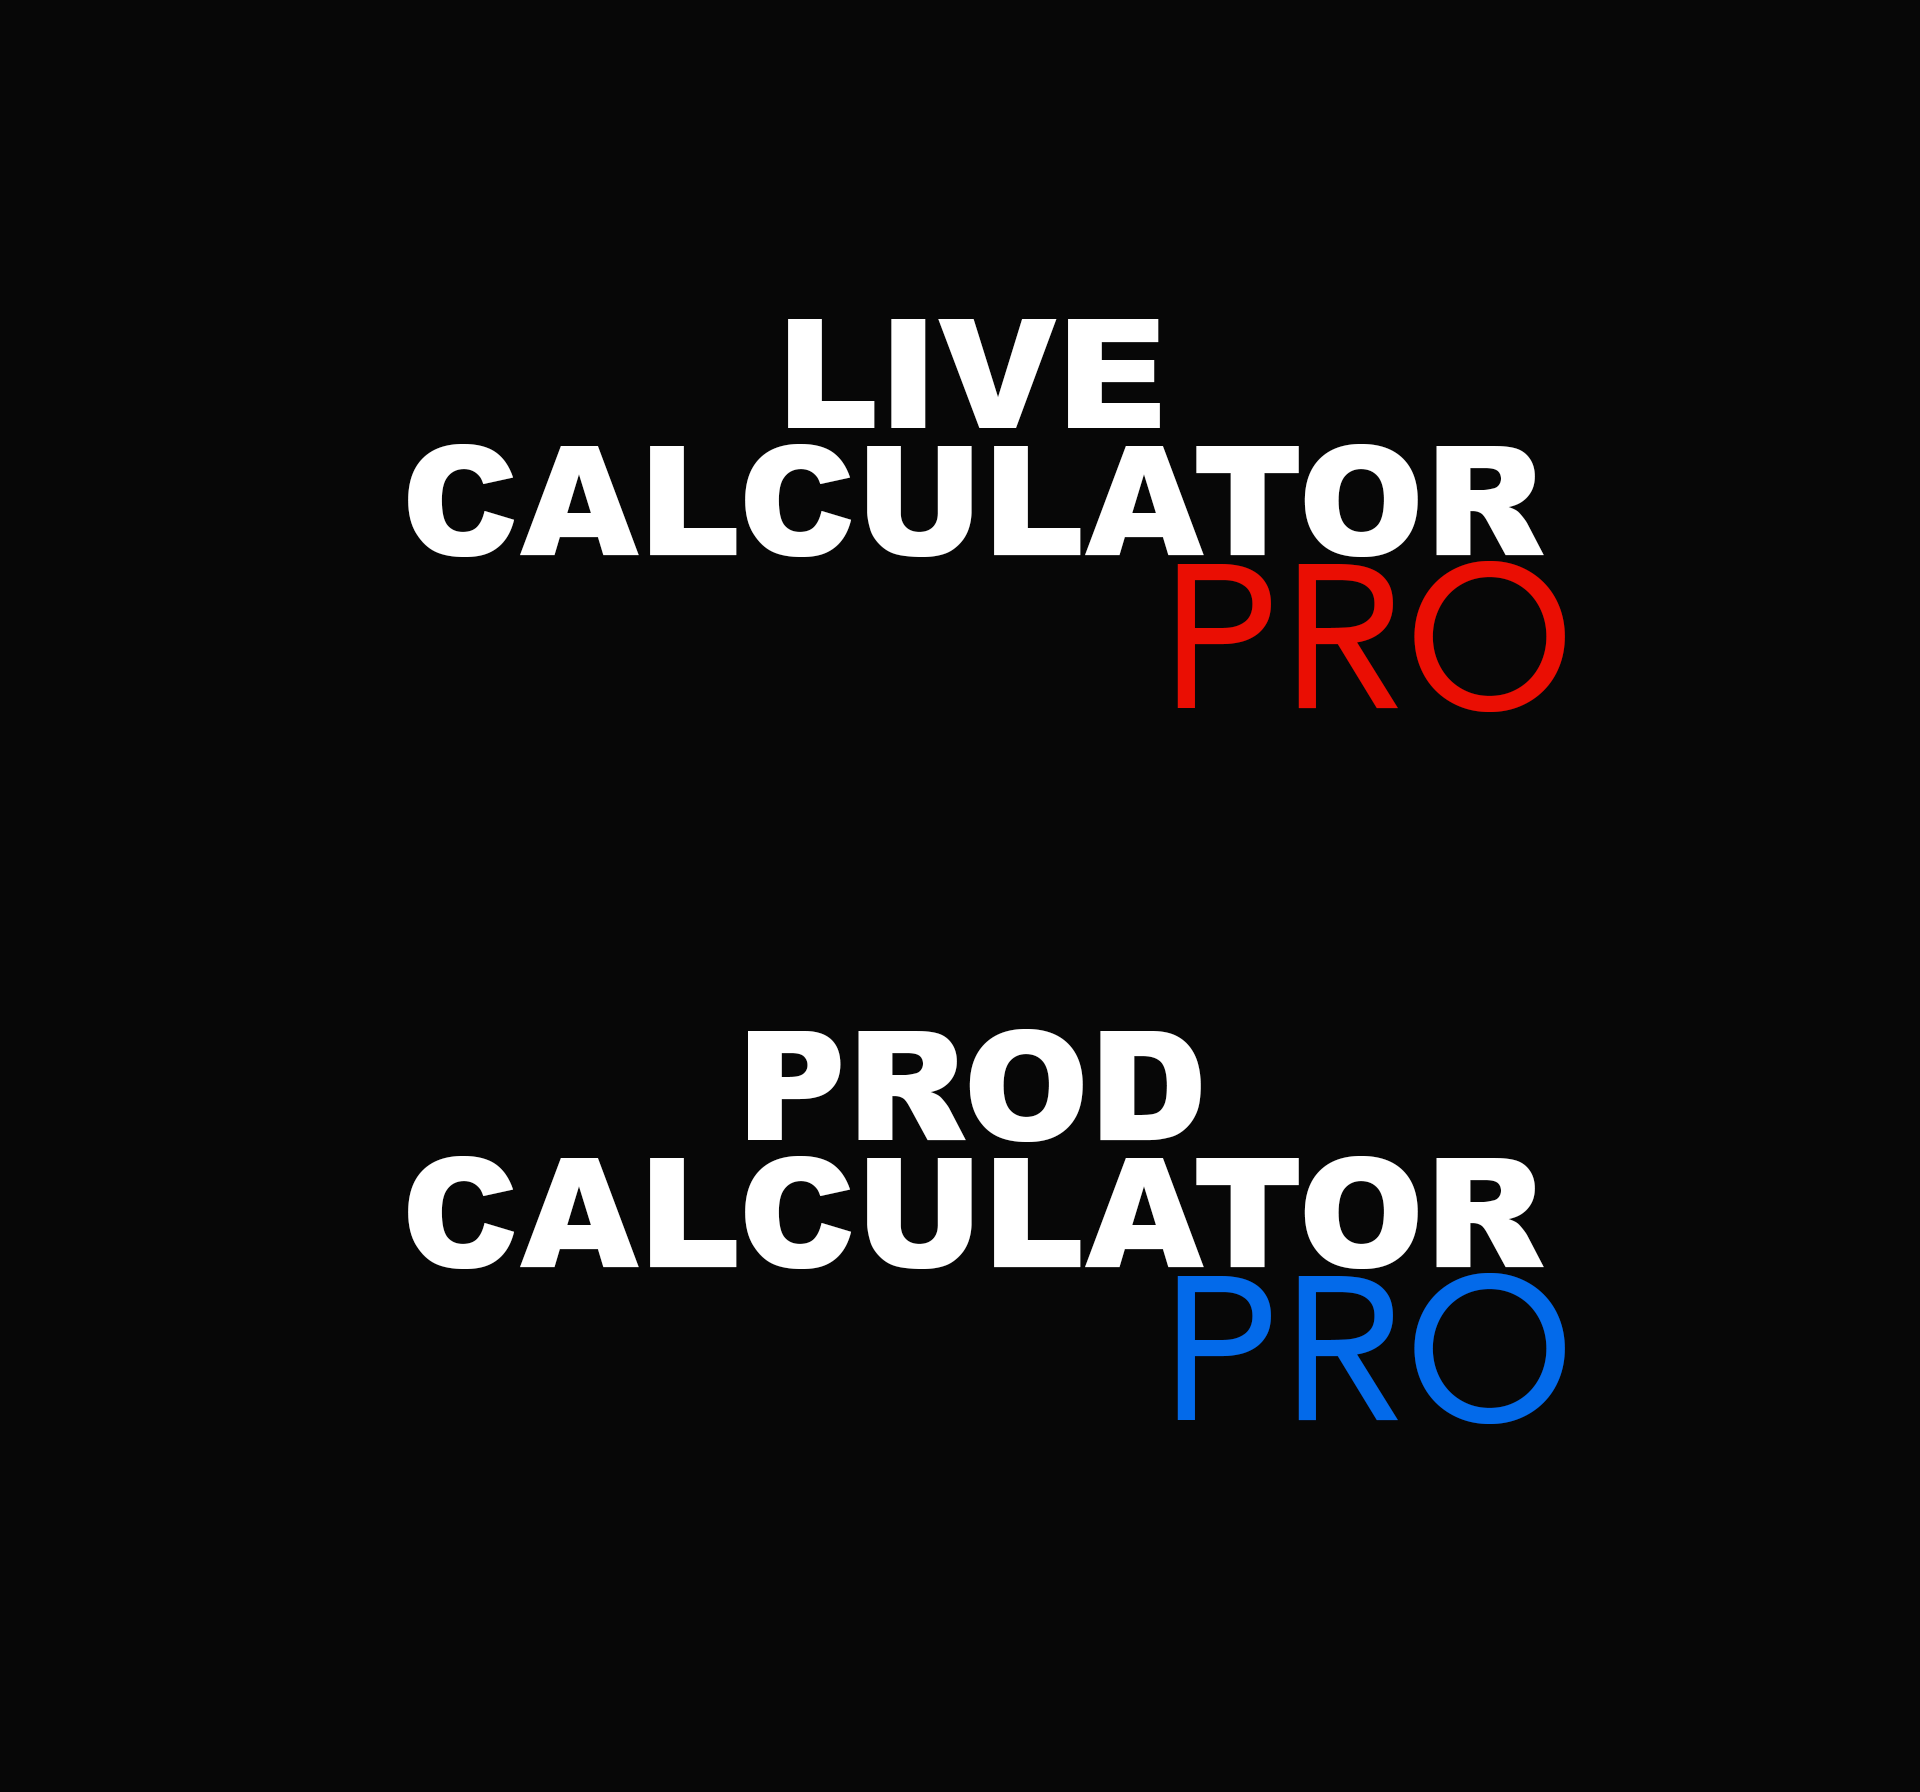 Live calculator Pro français Prod Calculator Pro